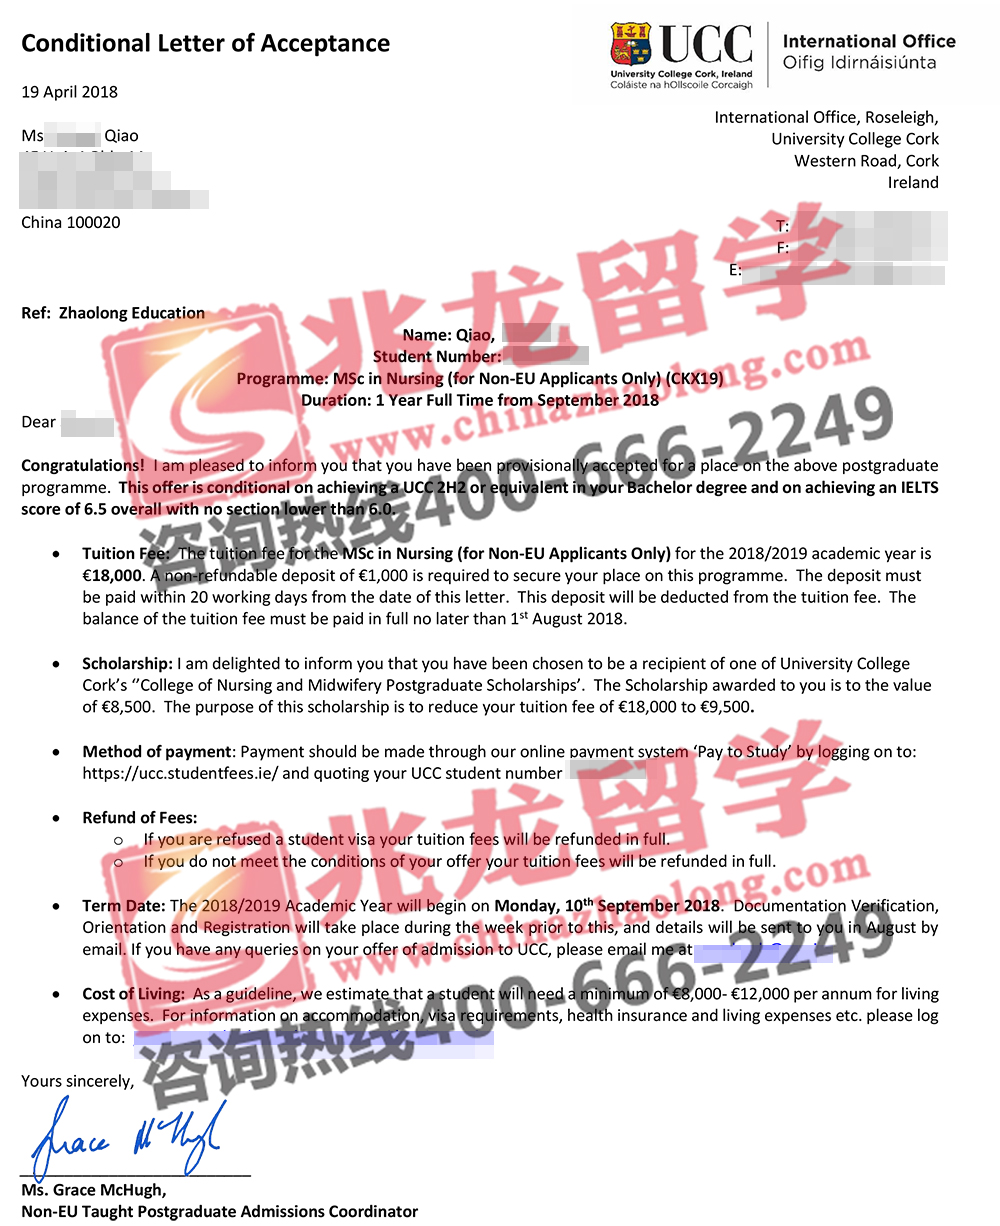 乔shuwei科克大学护理学硕士offer+8500欧奖学金-兆龙留学.jpg